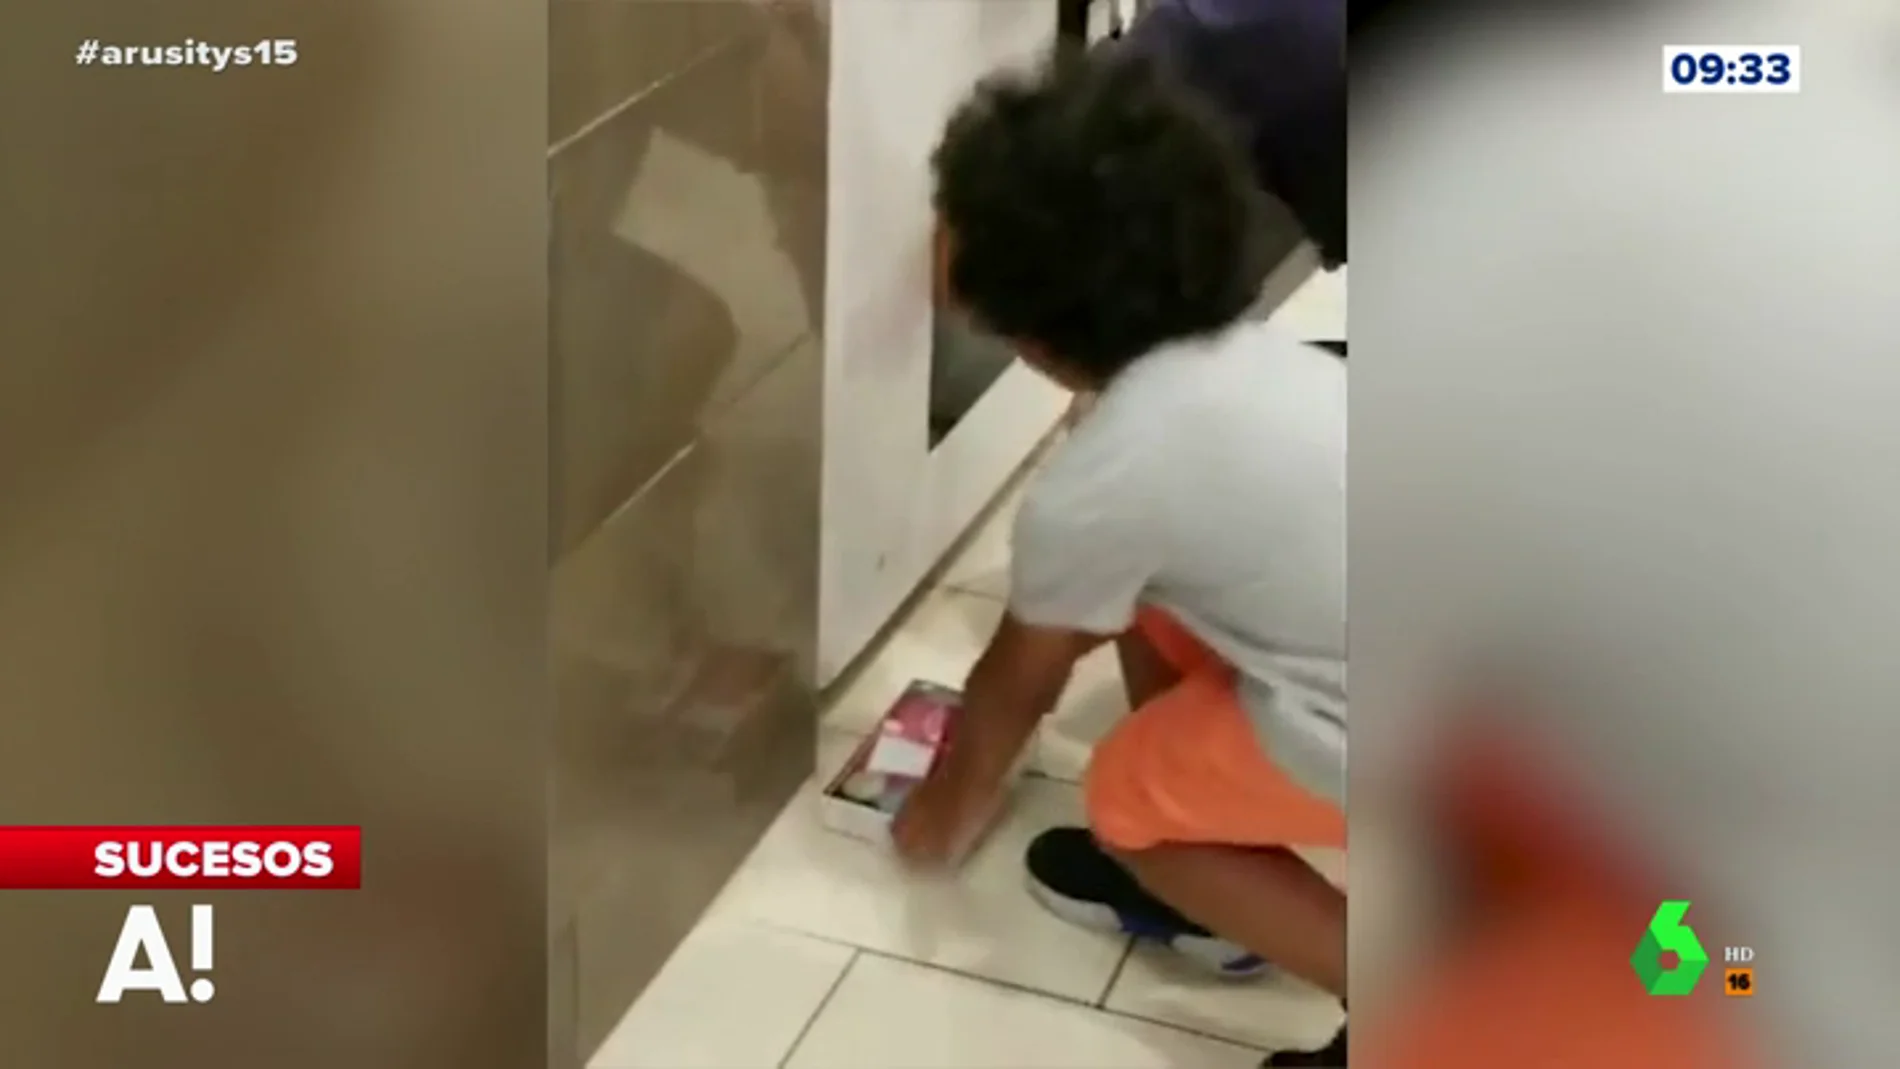 La indignante actuación de un padre mete a su hija dentro de una máquina recreativa para robar consolas 